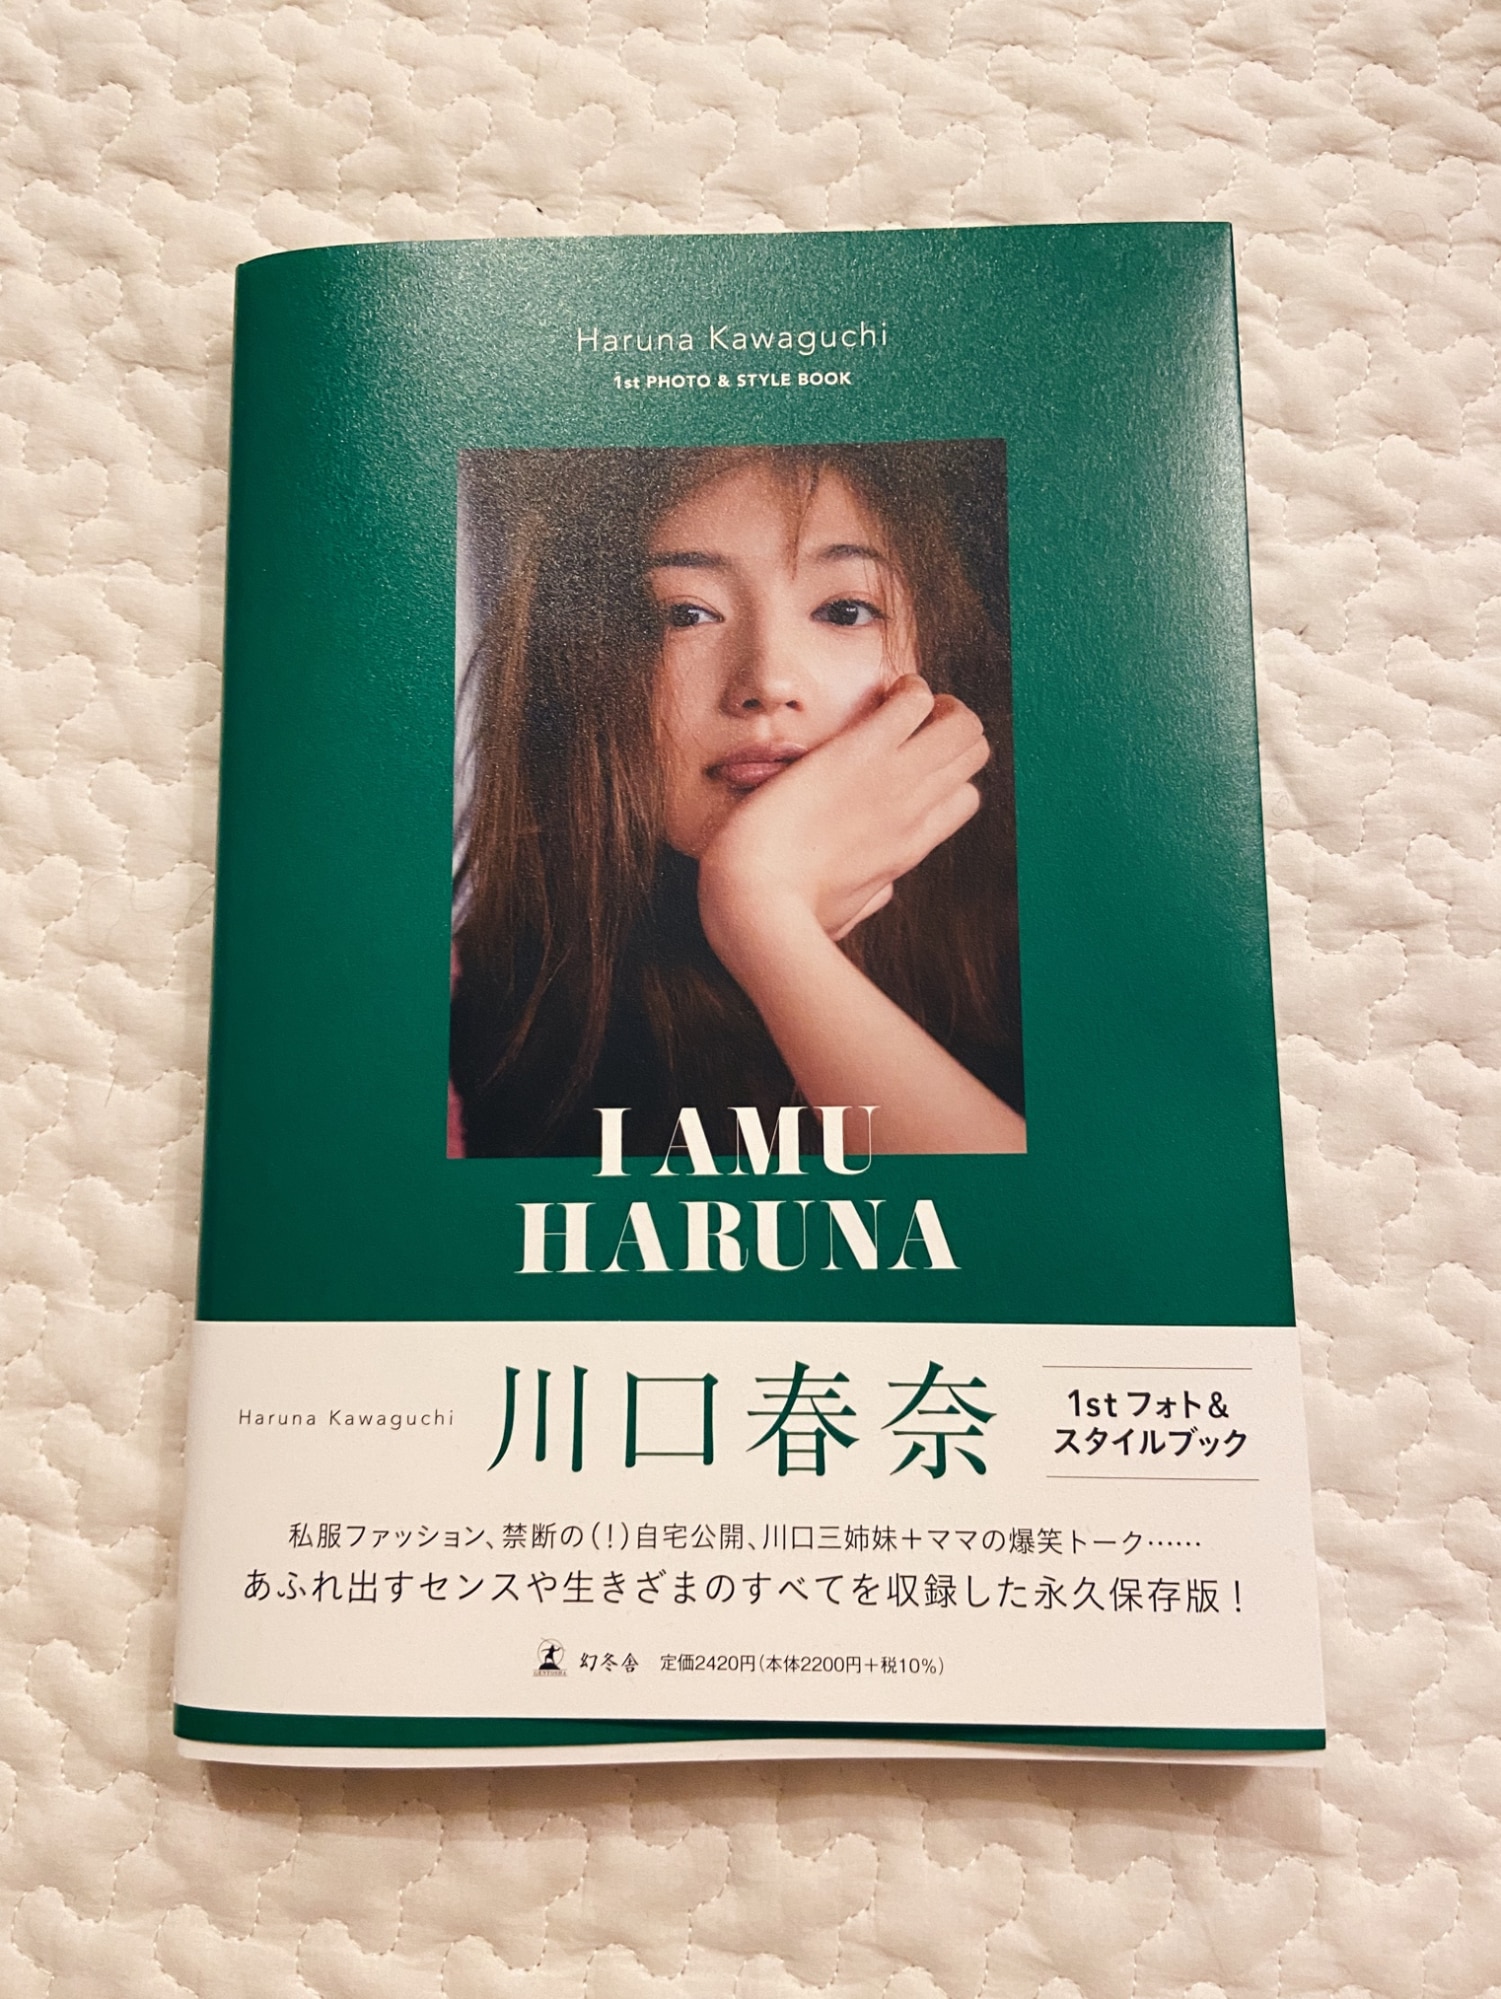 川口春奈 フォト&スタイルブック「I AMU HARUNA」-